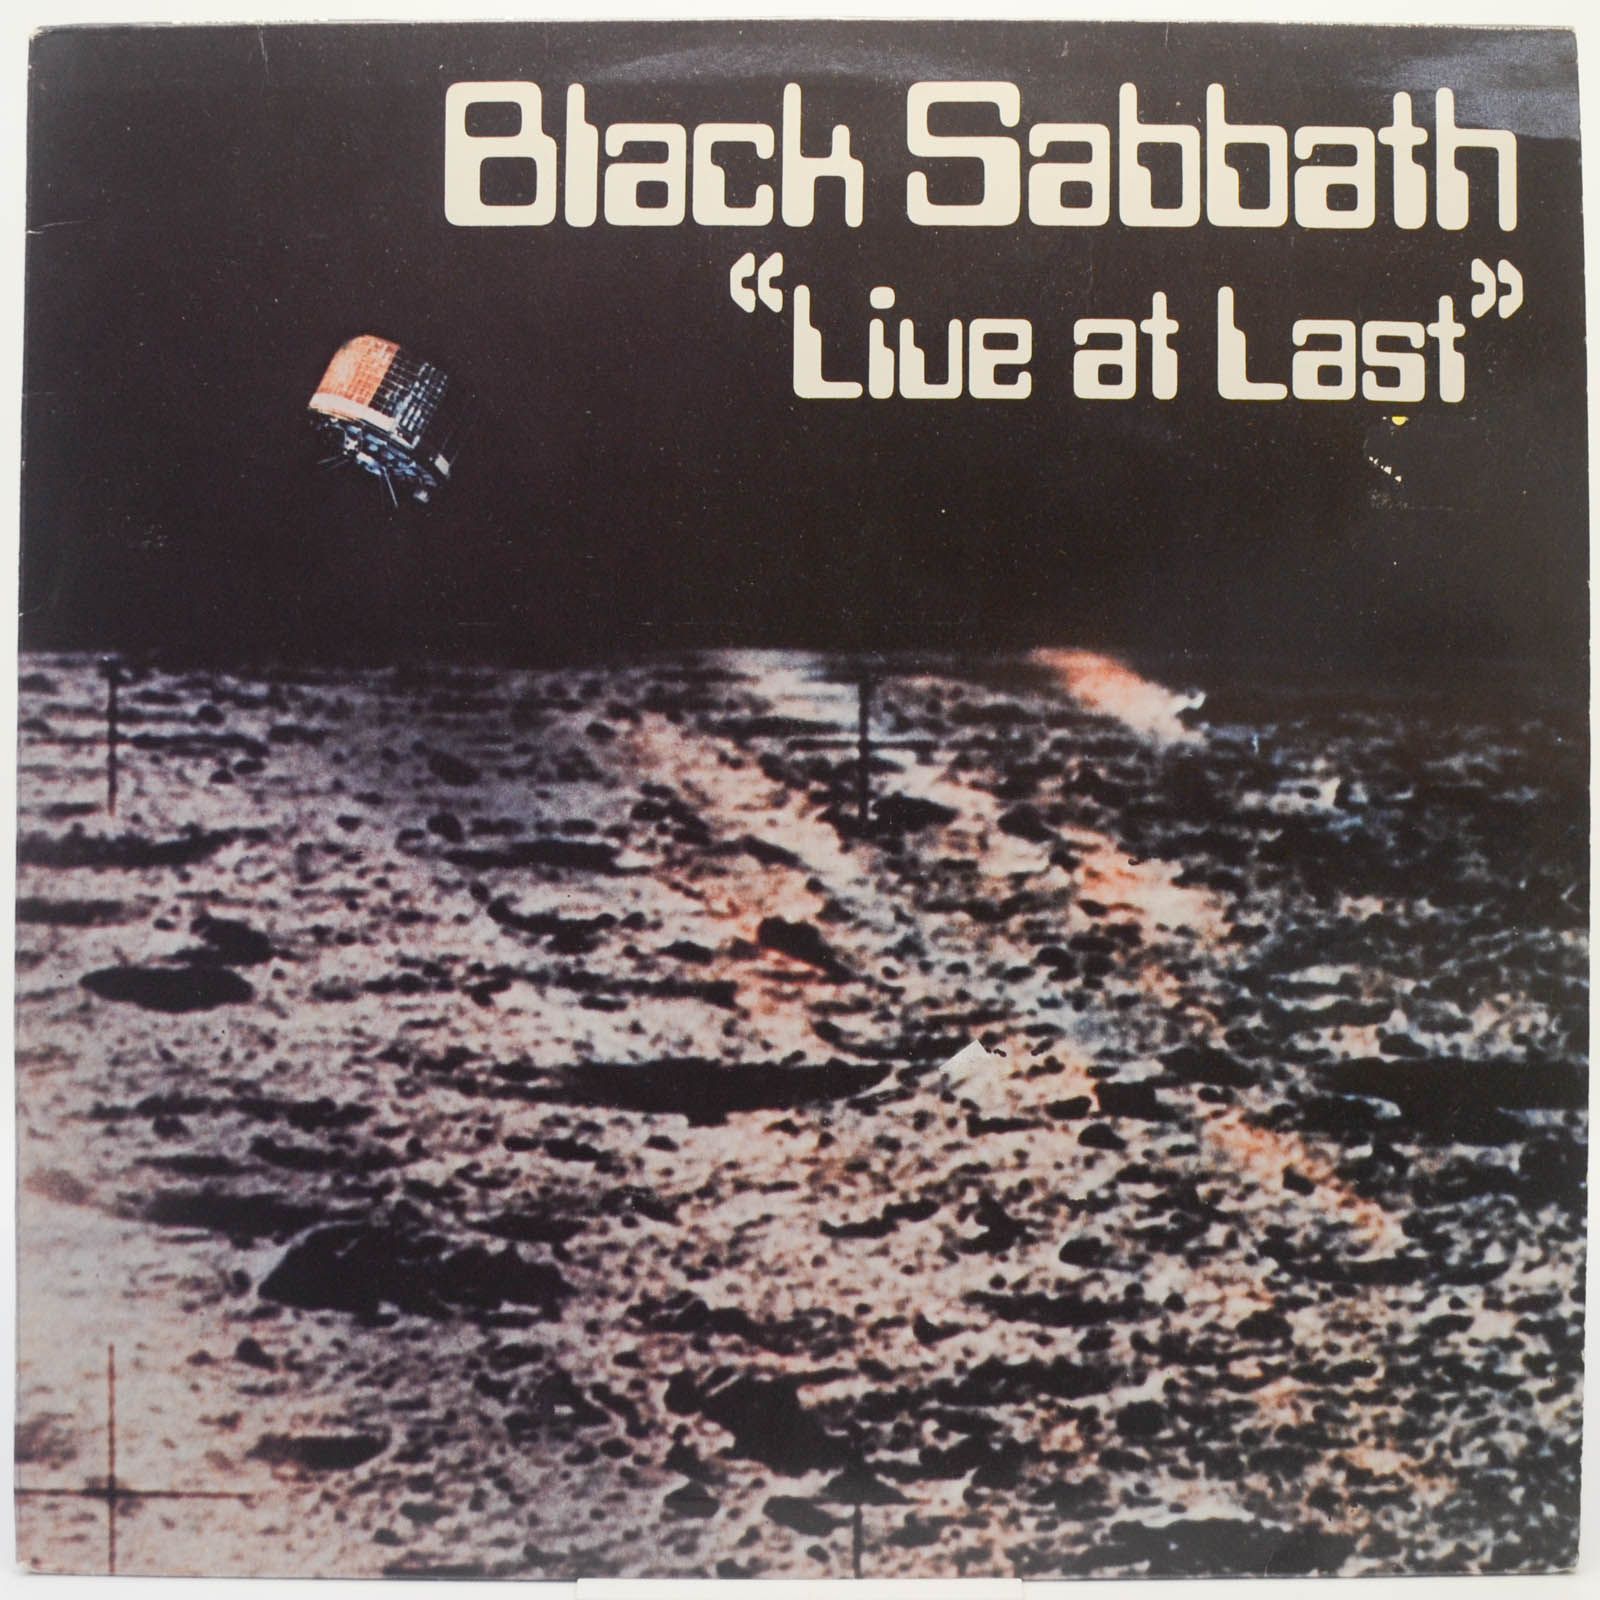 Black Sabbath — Live At Last, 1980